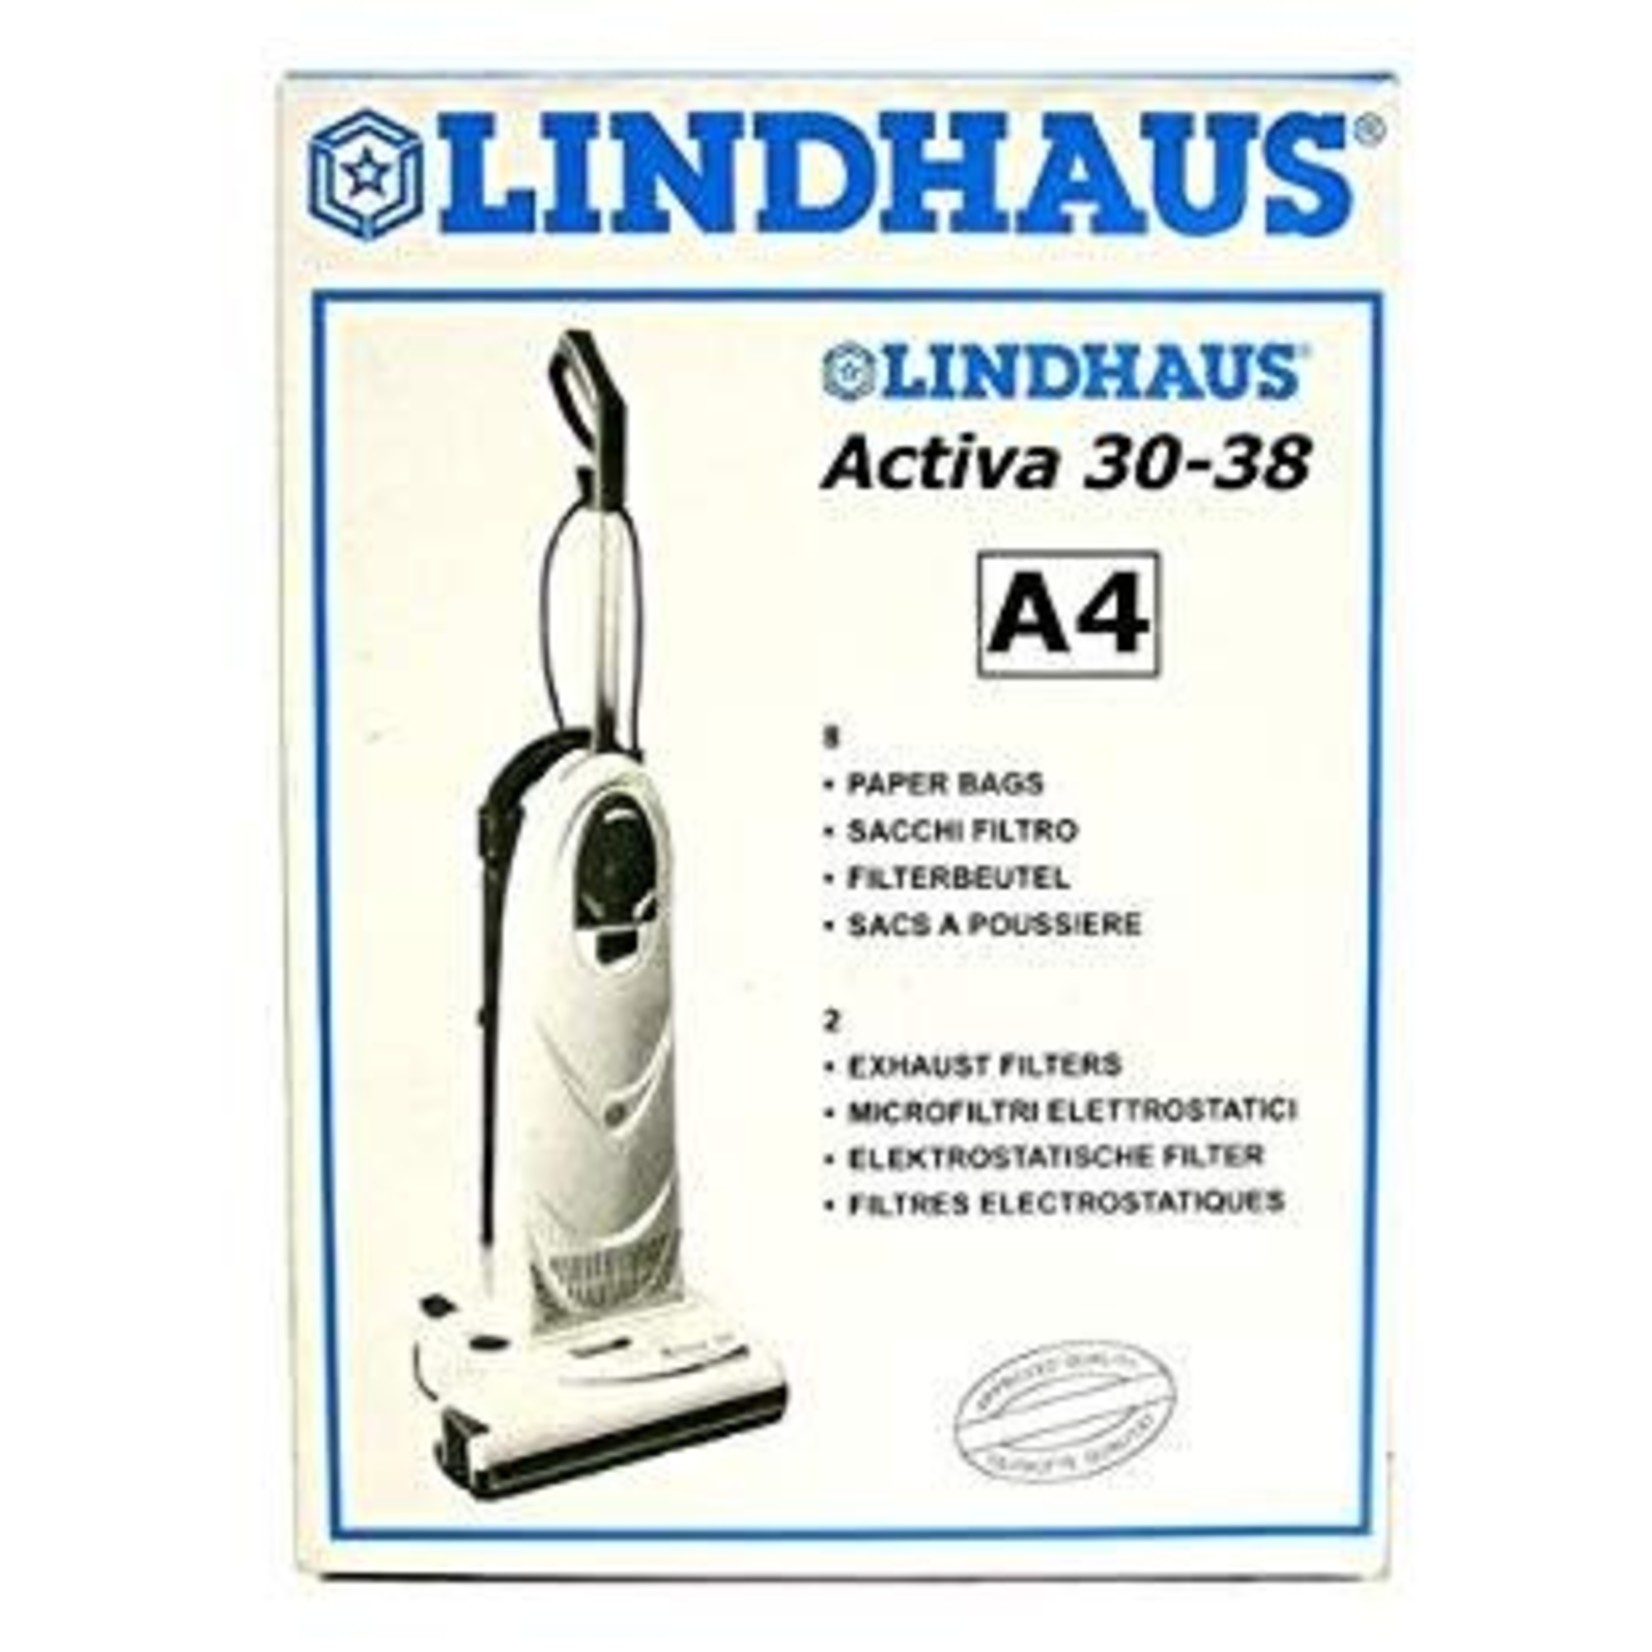 Lindhaus Lindhaus "A4" Paper Bag (8pk & 2 Filters)